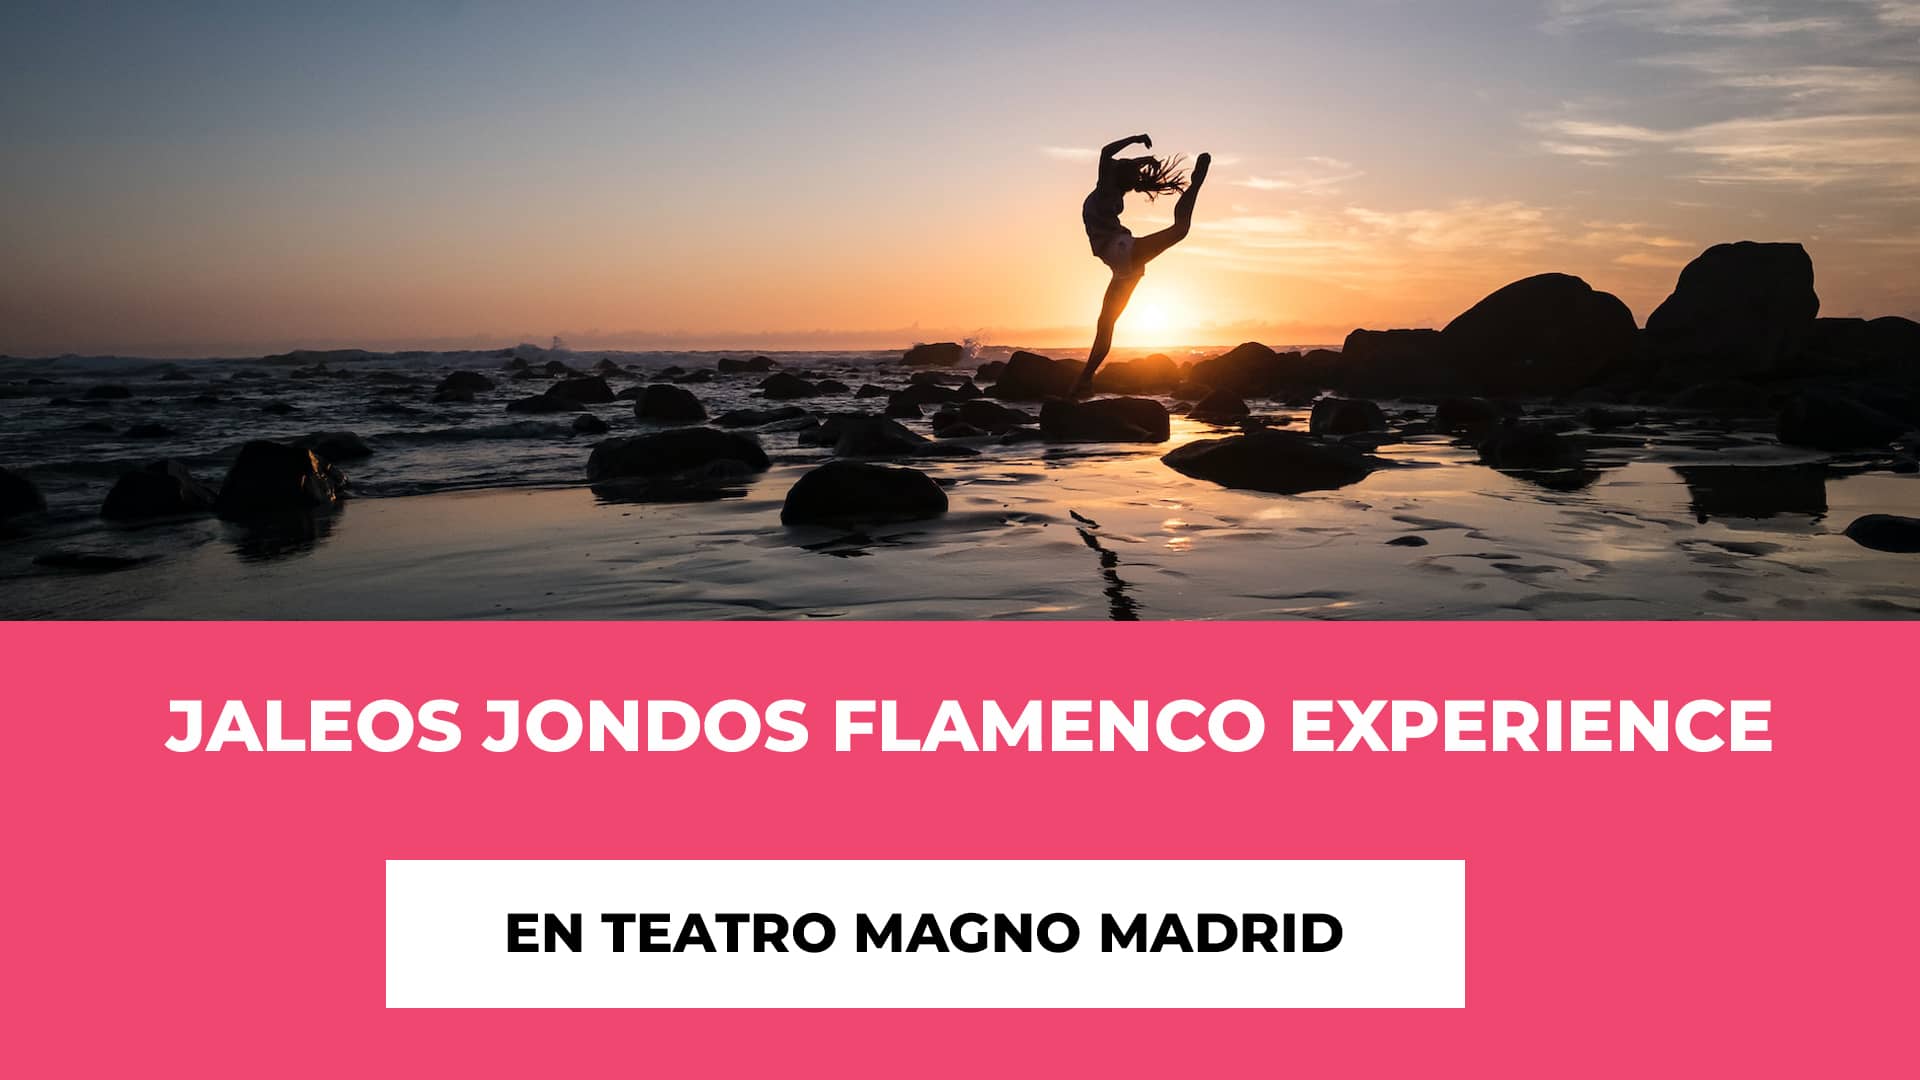 Jaleos Jondos Flamenco Experience en Teatro Magno Madrid - Dirección de Calidad - Música Electrificante - Coreografía Impactante